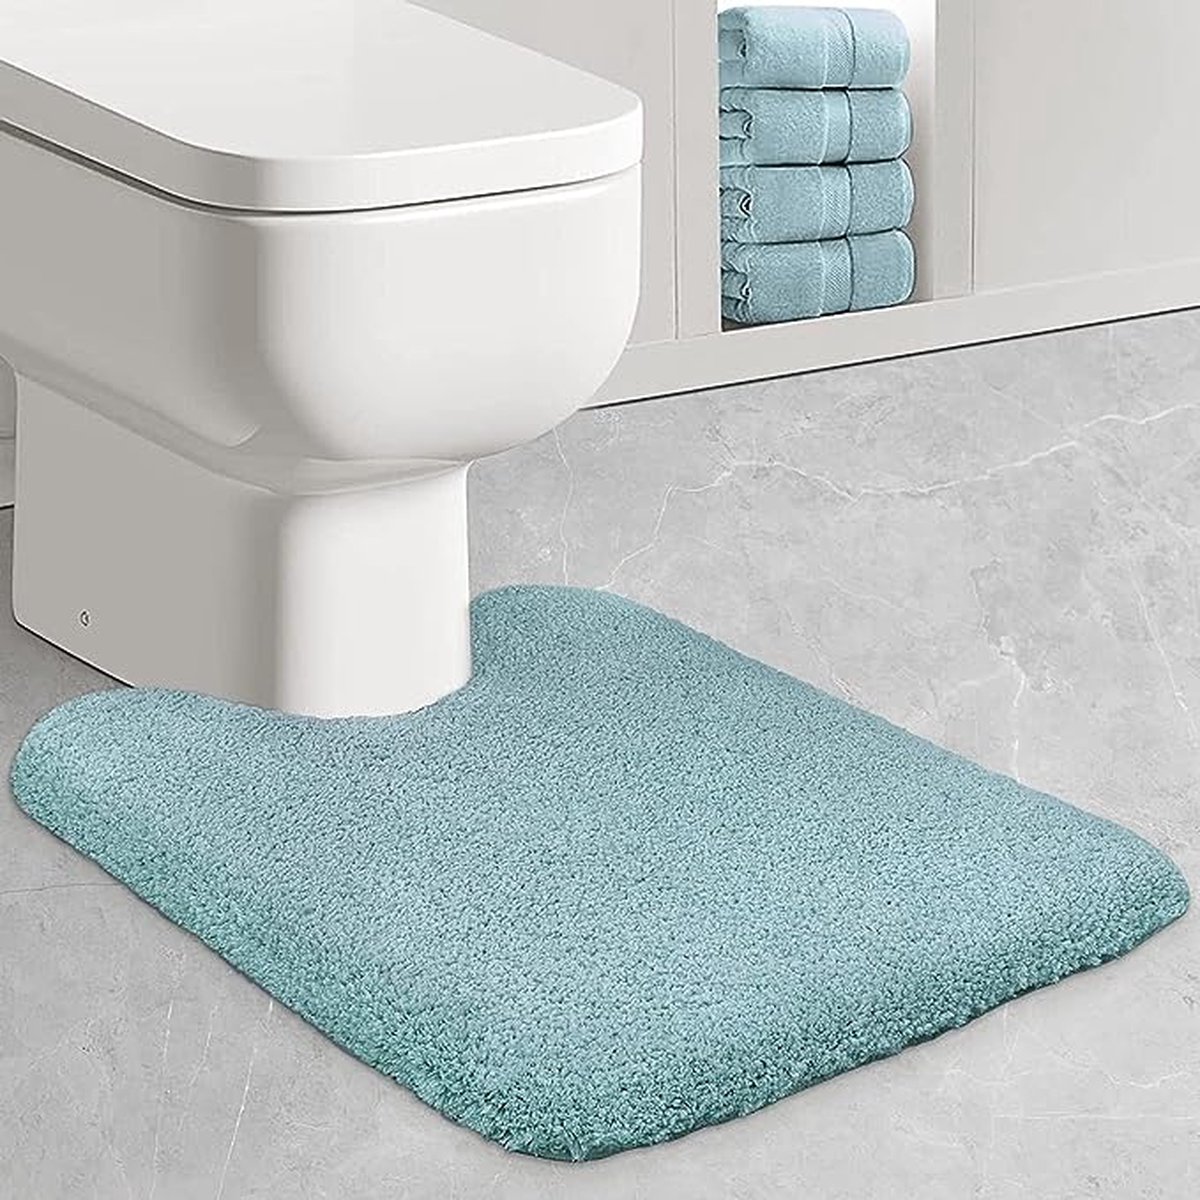 WC-mat met uitsparing, 50 x 60 cm, antislip, zachte, toiletmat, badmat, microvezel, badmatten voor toilet - turquoise